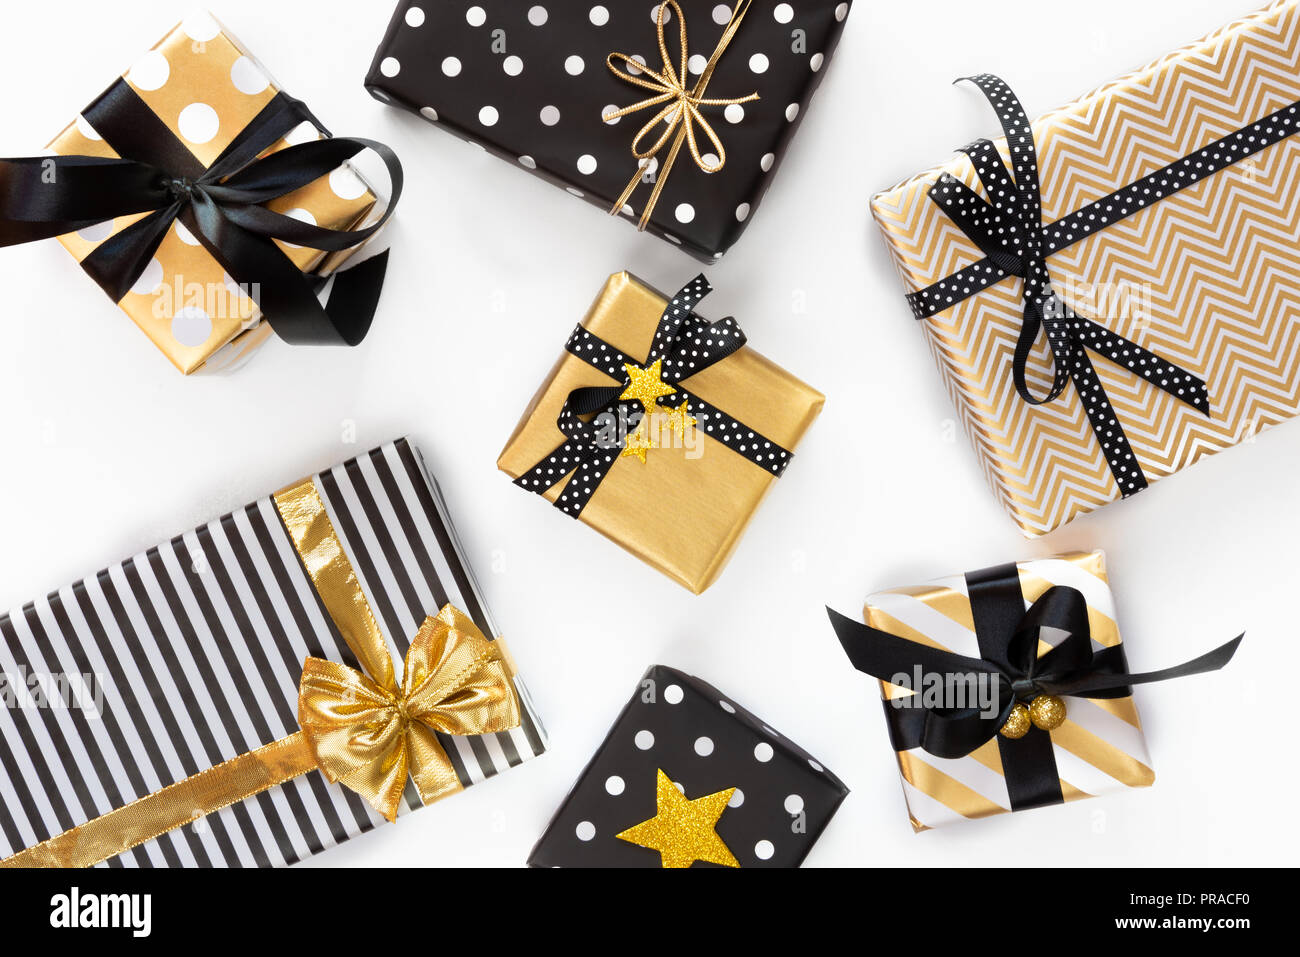 Vue de dessus de boîtes-cadeaux dans différents coloris noir, blanc et doré. Mise à plat. Un concept de Noël, Nouvel An, fête l'événement. Banque D'Images